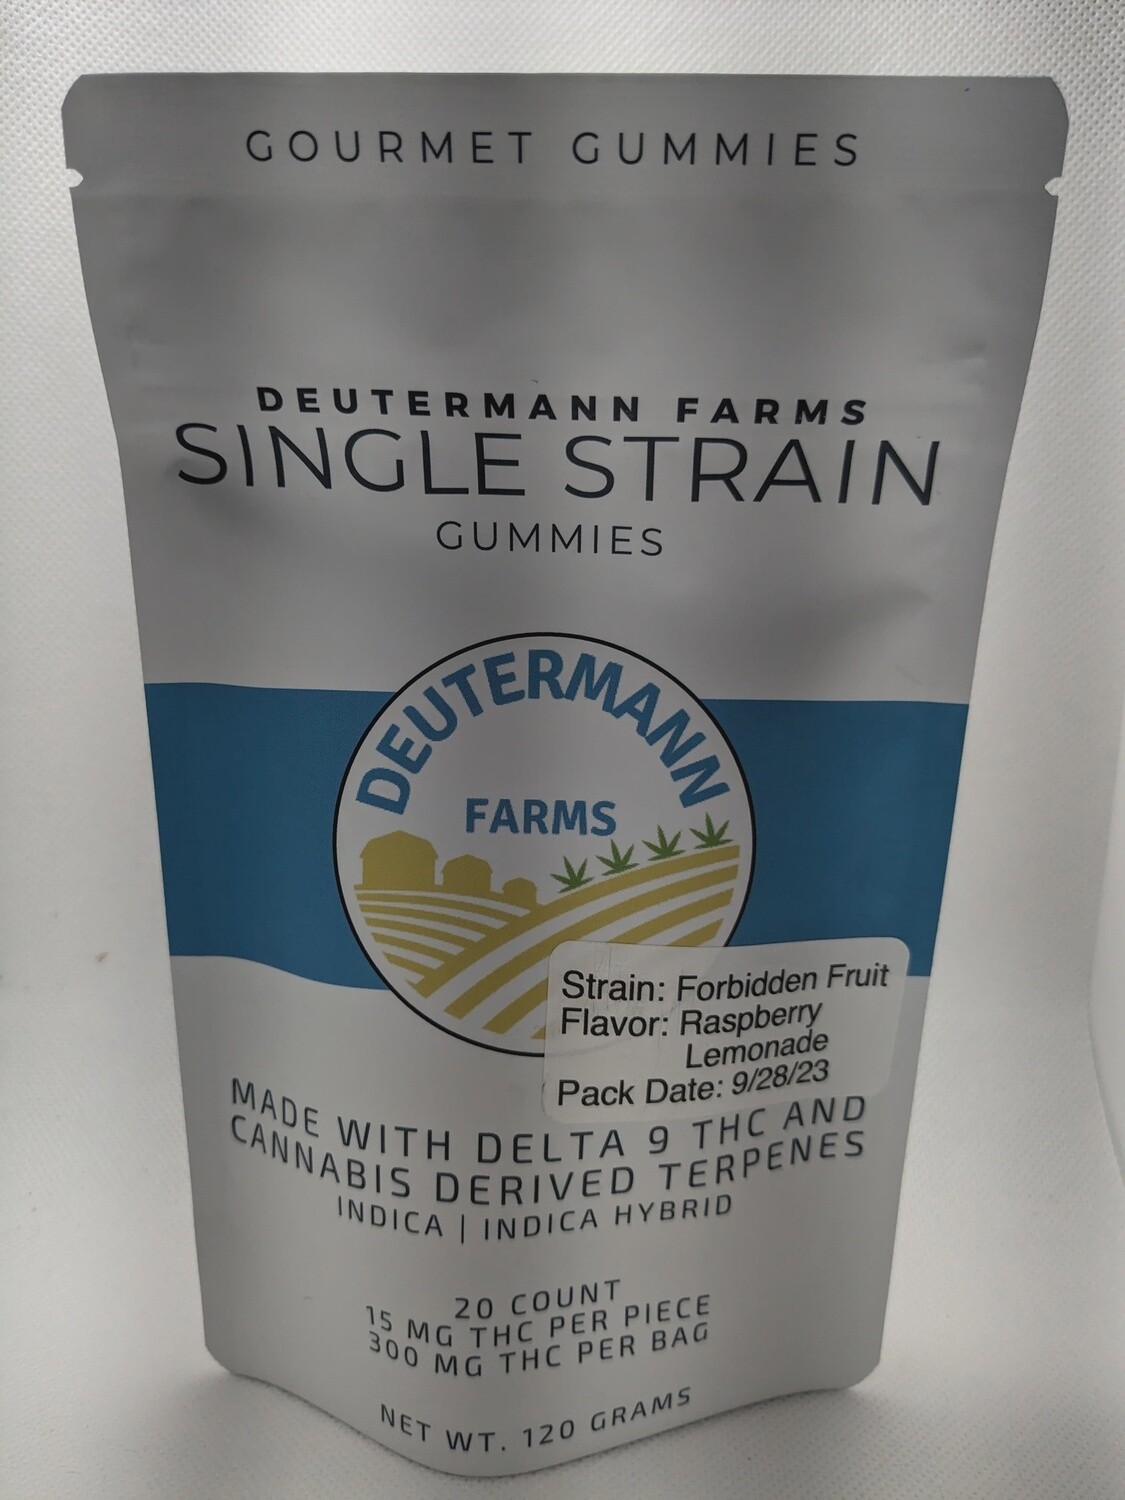 Deutermann Farms Delta 9 Single Strain Gummies - 15mg